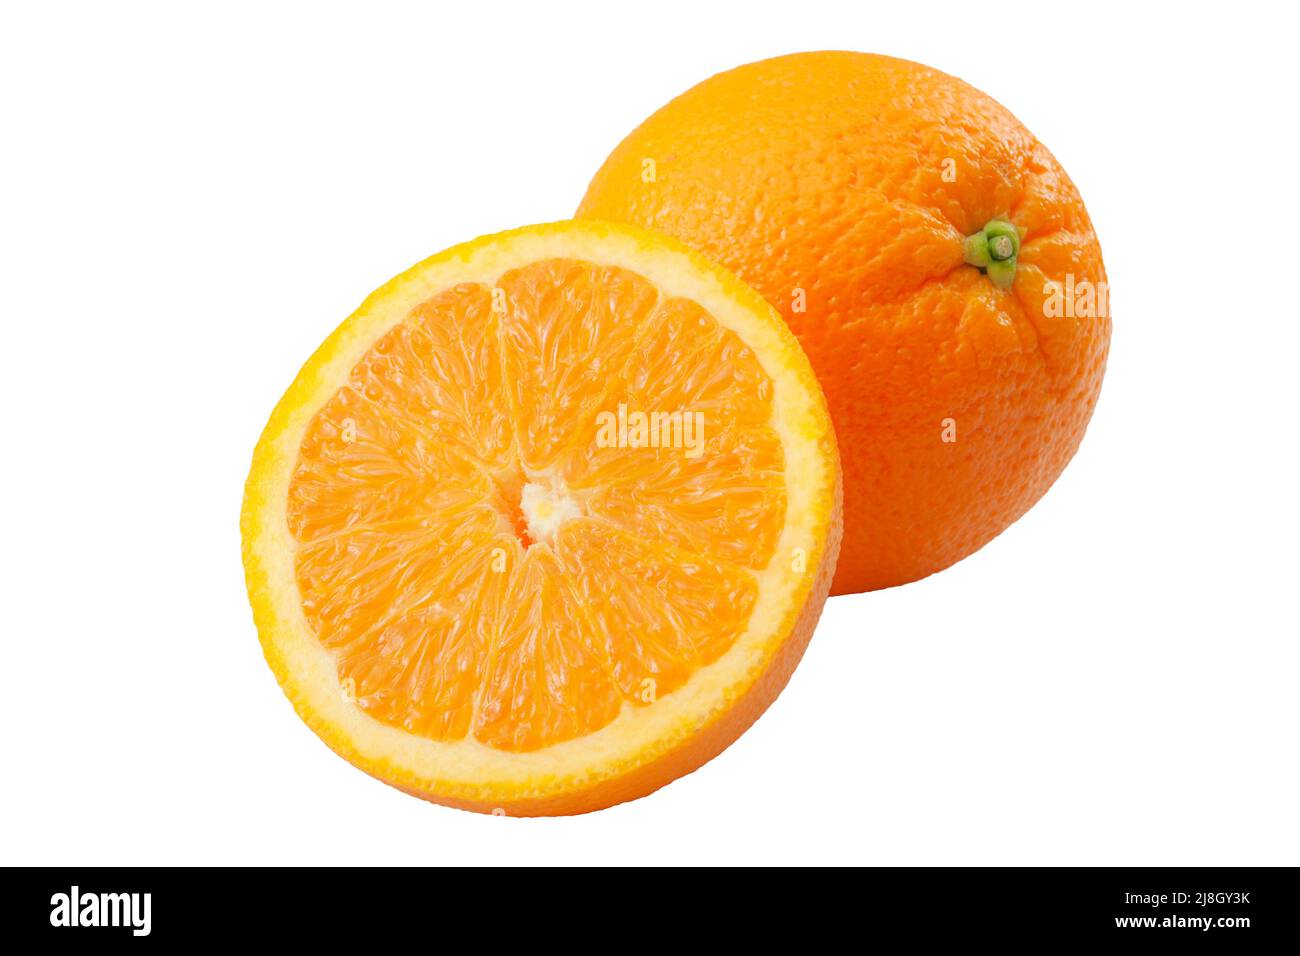 Cítricos ricos en vitamina C y refrescante jugo de verano tema concepto con una naranja completa y una rodada en la mitad aislado sobre fondo blanco y un Foto de stock